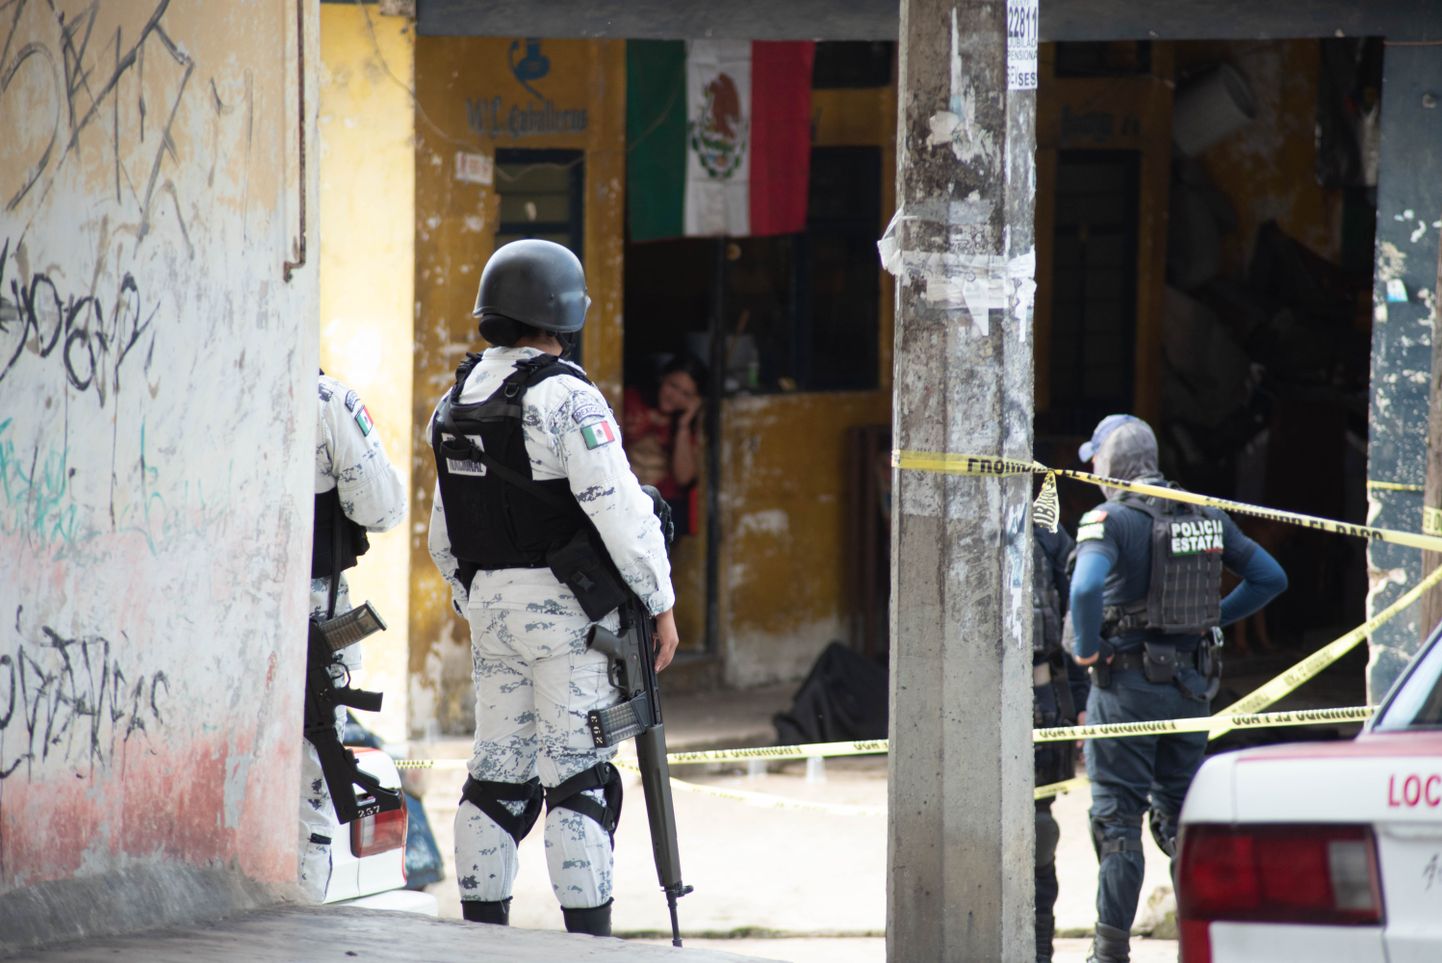 Mehhiko Veracruzi piirkond ägab pideva vägivalla all. Pilt pärineb 2020. 15. septembril aset leidnud tulevahetusest, kus hukkus üks mees.